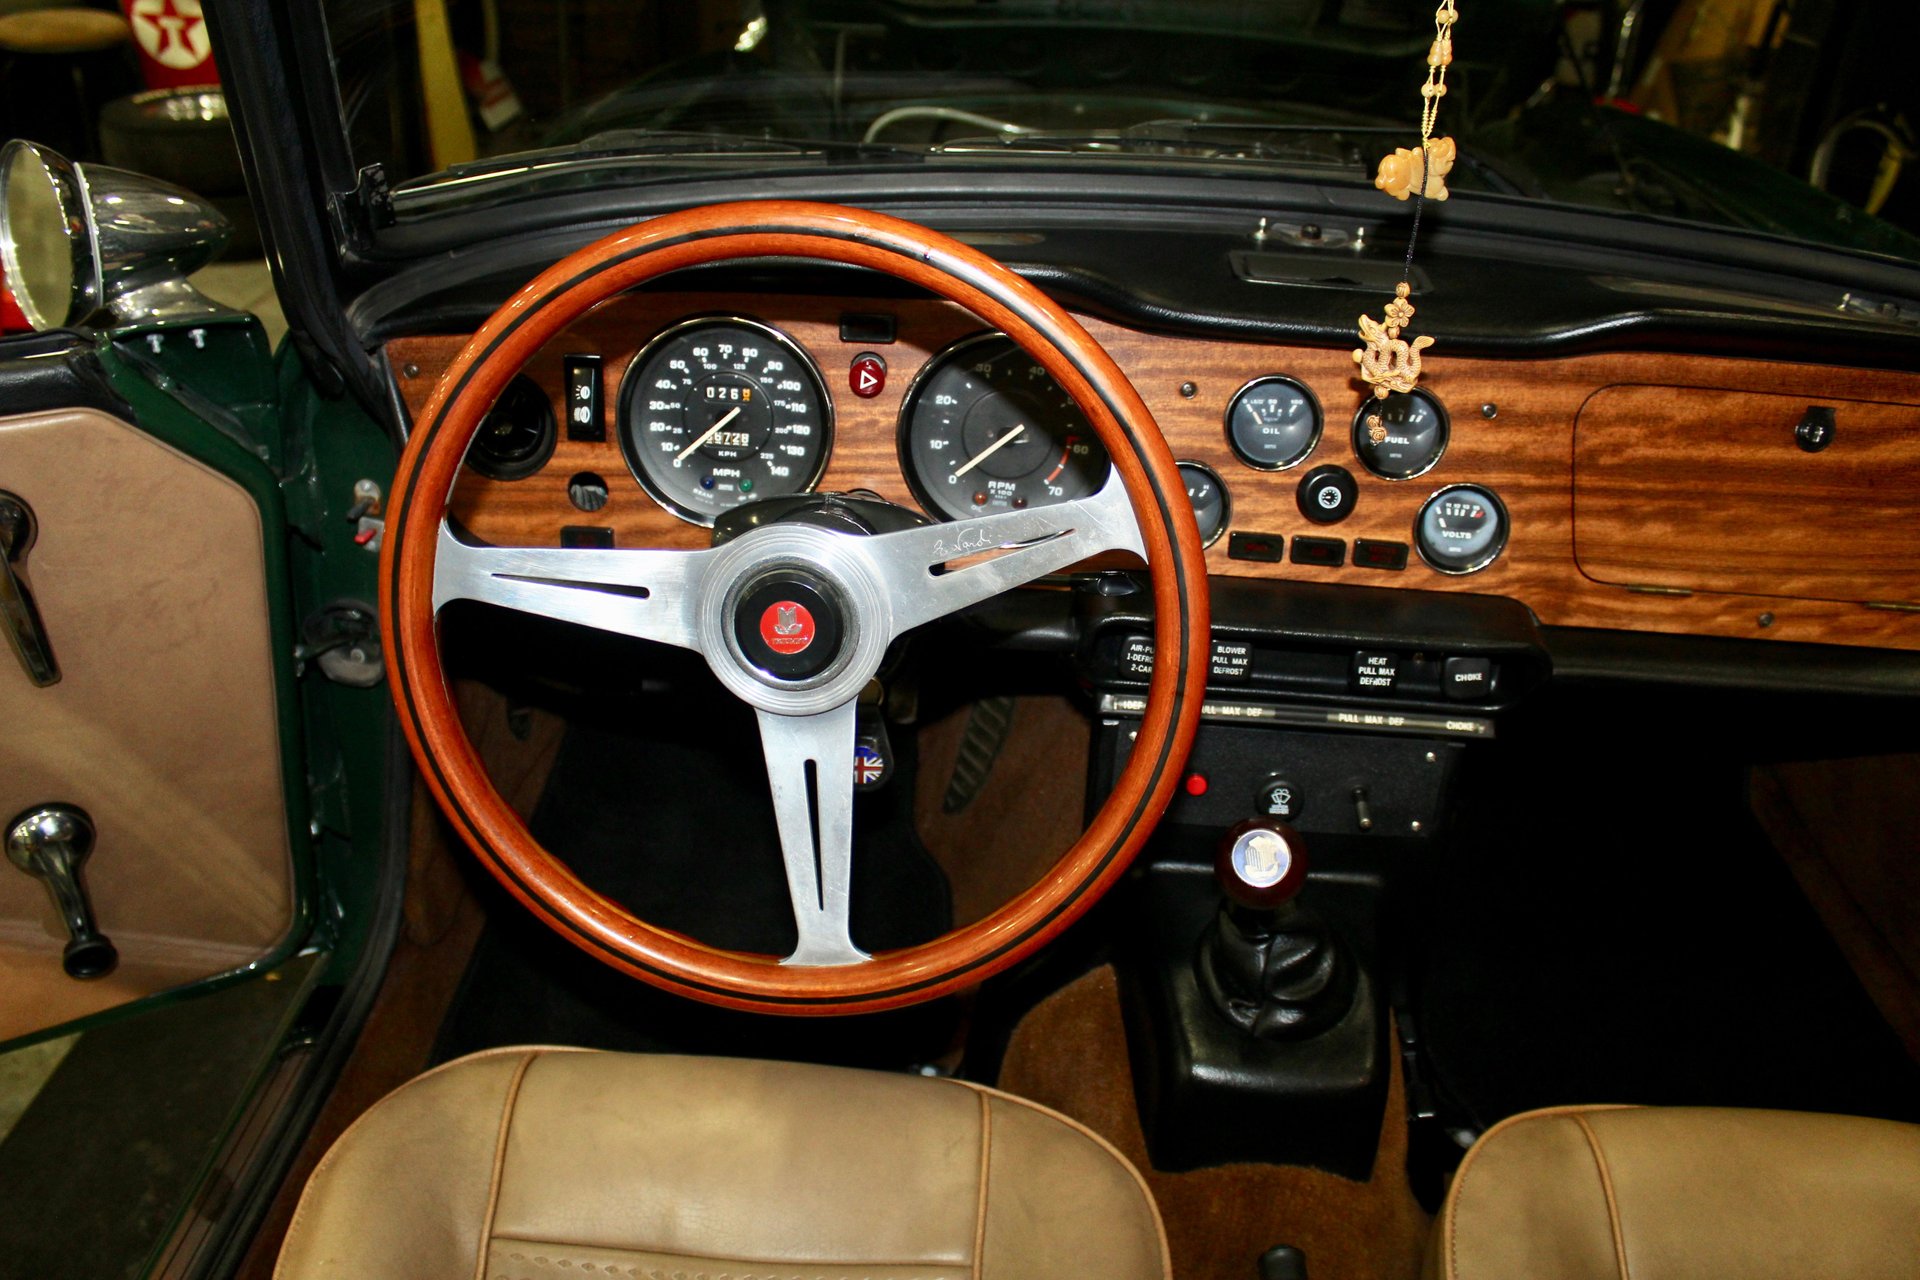 For Sale 1976 Triumph TR6